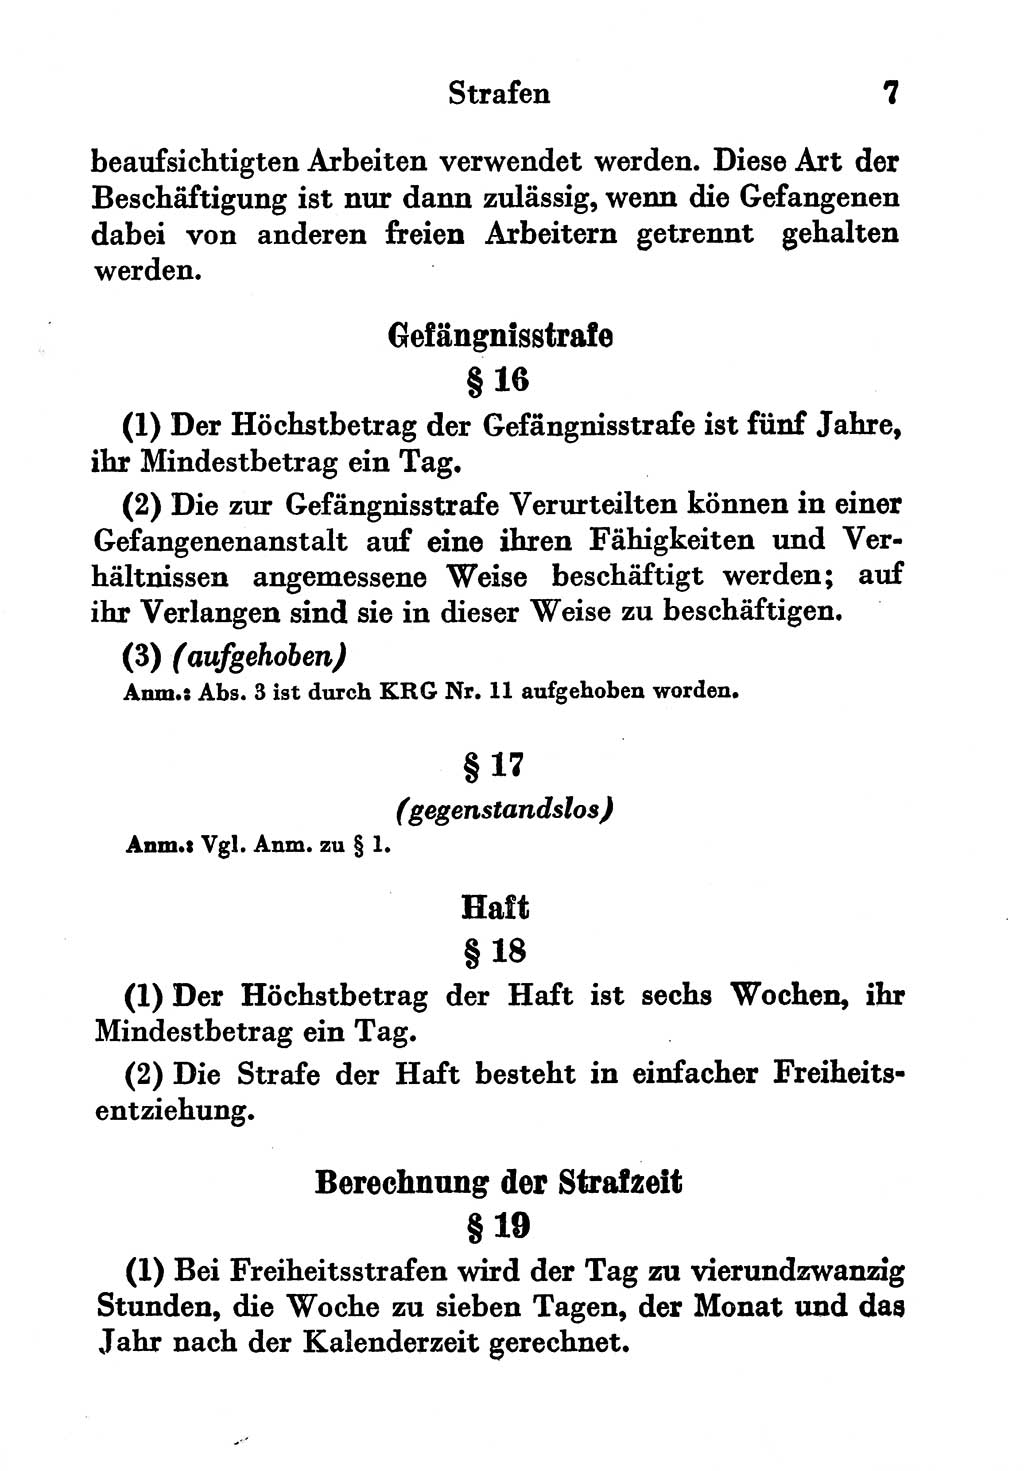 Strafgesetzbuch (StGB) und andere Strafgesetze [Deutsche Demokratische Republik (DDR)] 1956, Seite 7 (StGB Strafges. DDR 1956, S. 7)